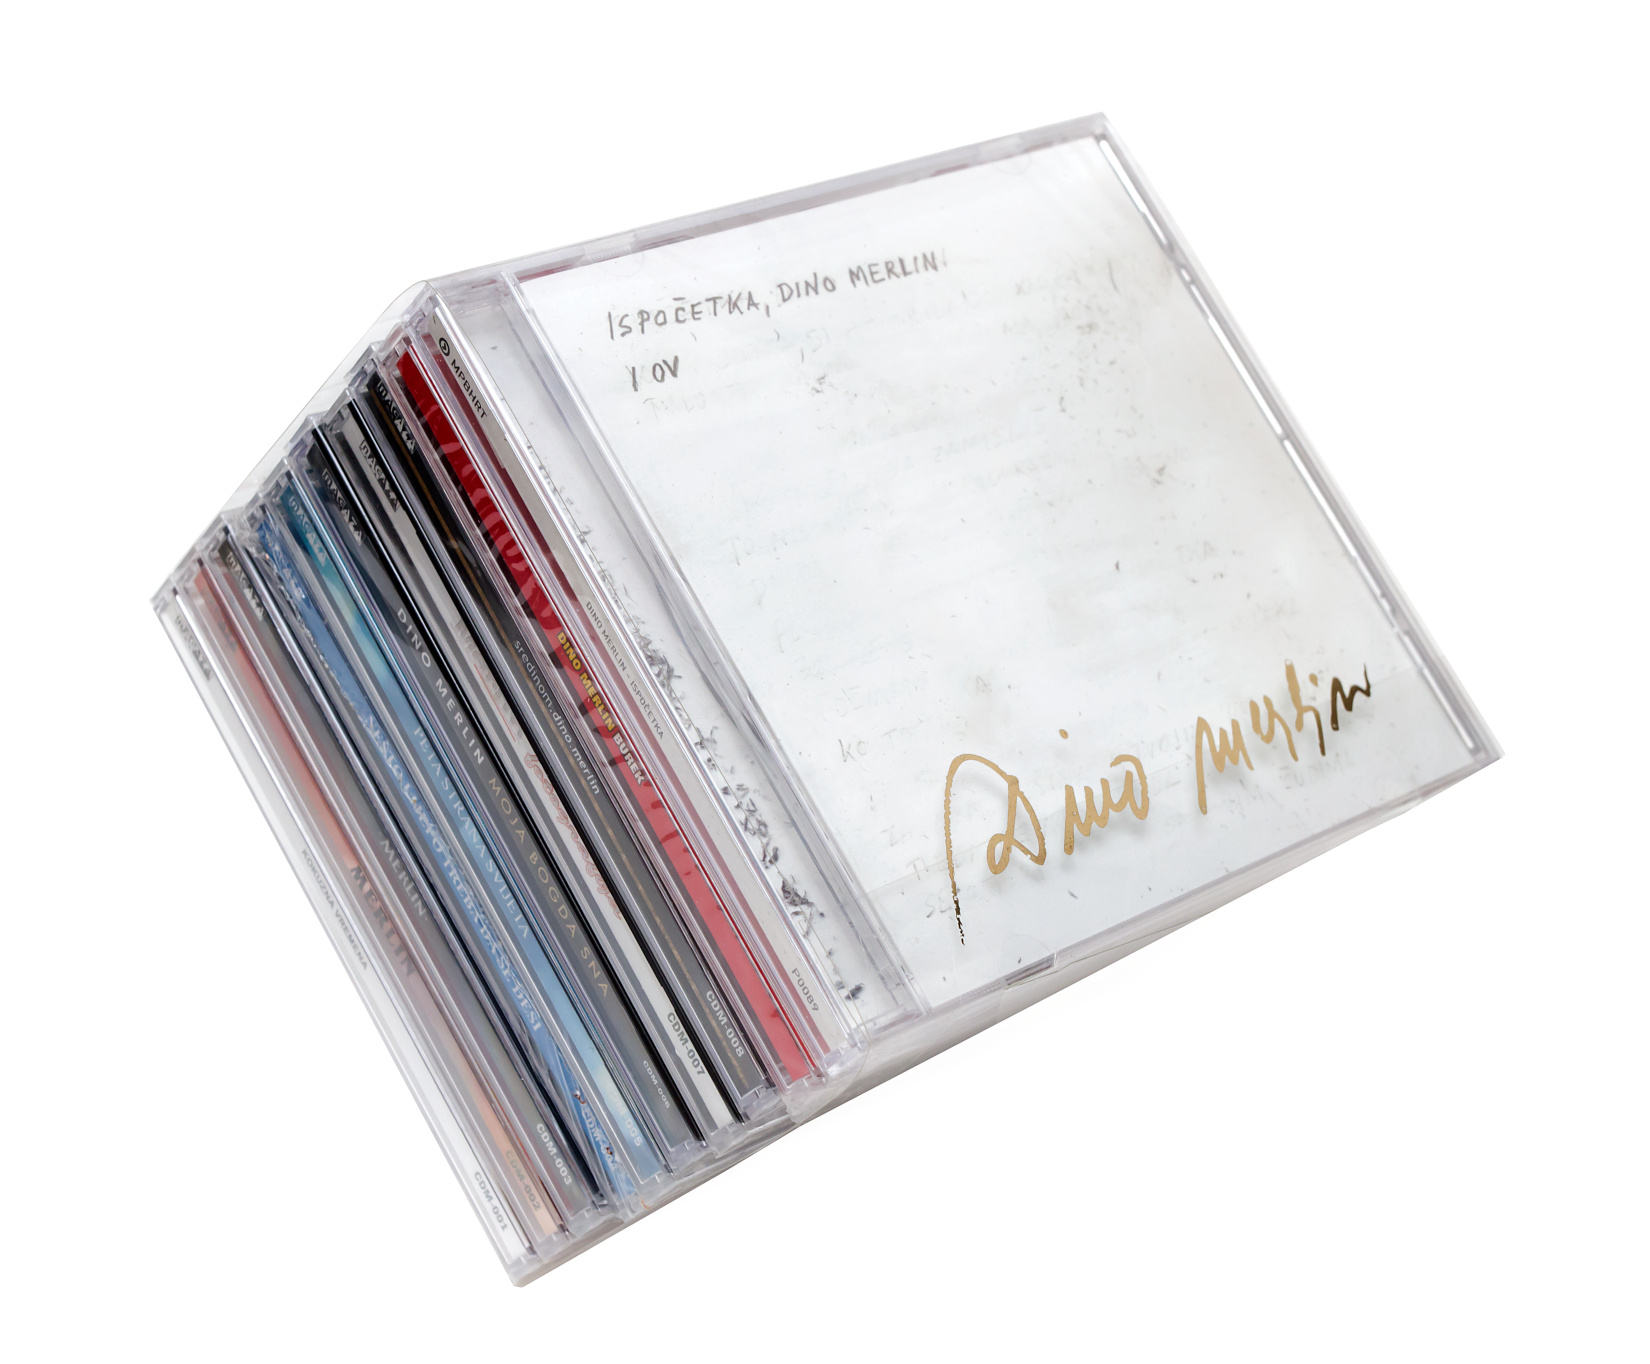 Merlin i Dino Merlin diskografija, 11 studijskih CD albuma, ''Kokuzna vremena'', ''Teško meni sa tobom, a još teže bez tebe'', ''Merlin'',''Nešto lijepo treba da se desi'', ''Peta strana svijeta'', ''Moja bogda sna'', ''Fotografija'', ''Sredinom'', ''Burek'', ''Ispočetka'', ''Hotel Nacional''